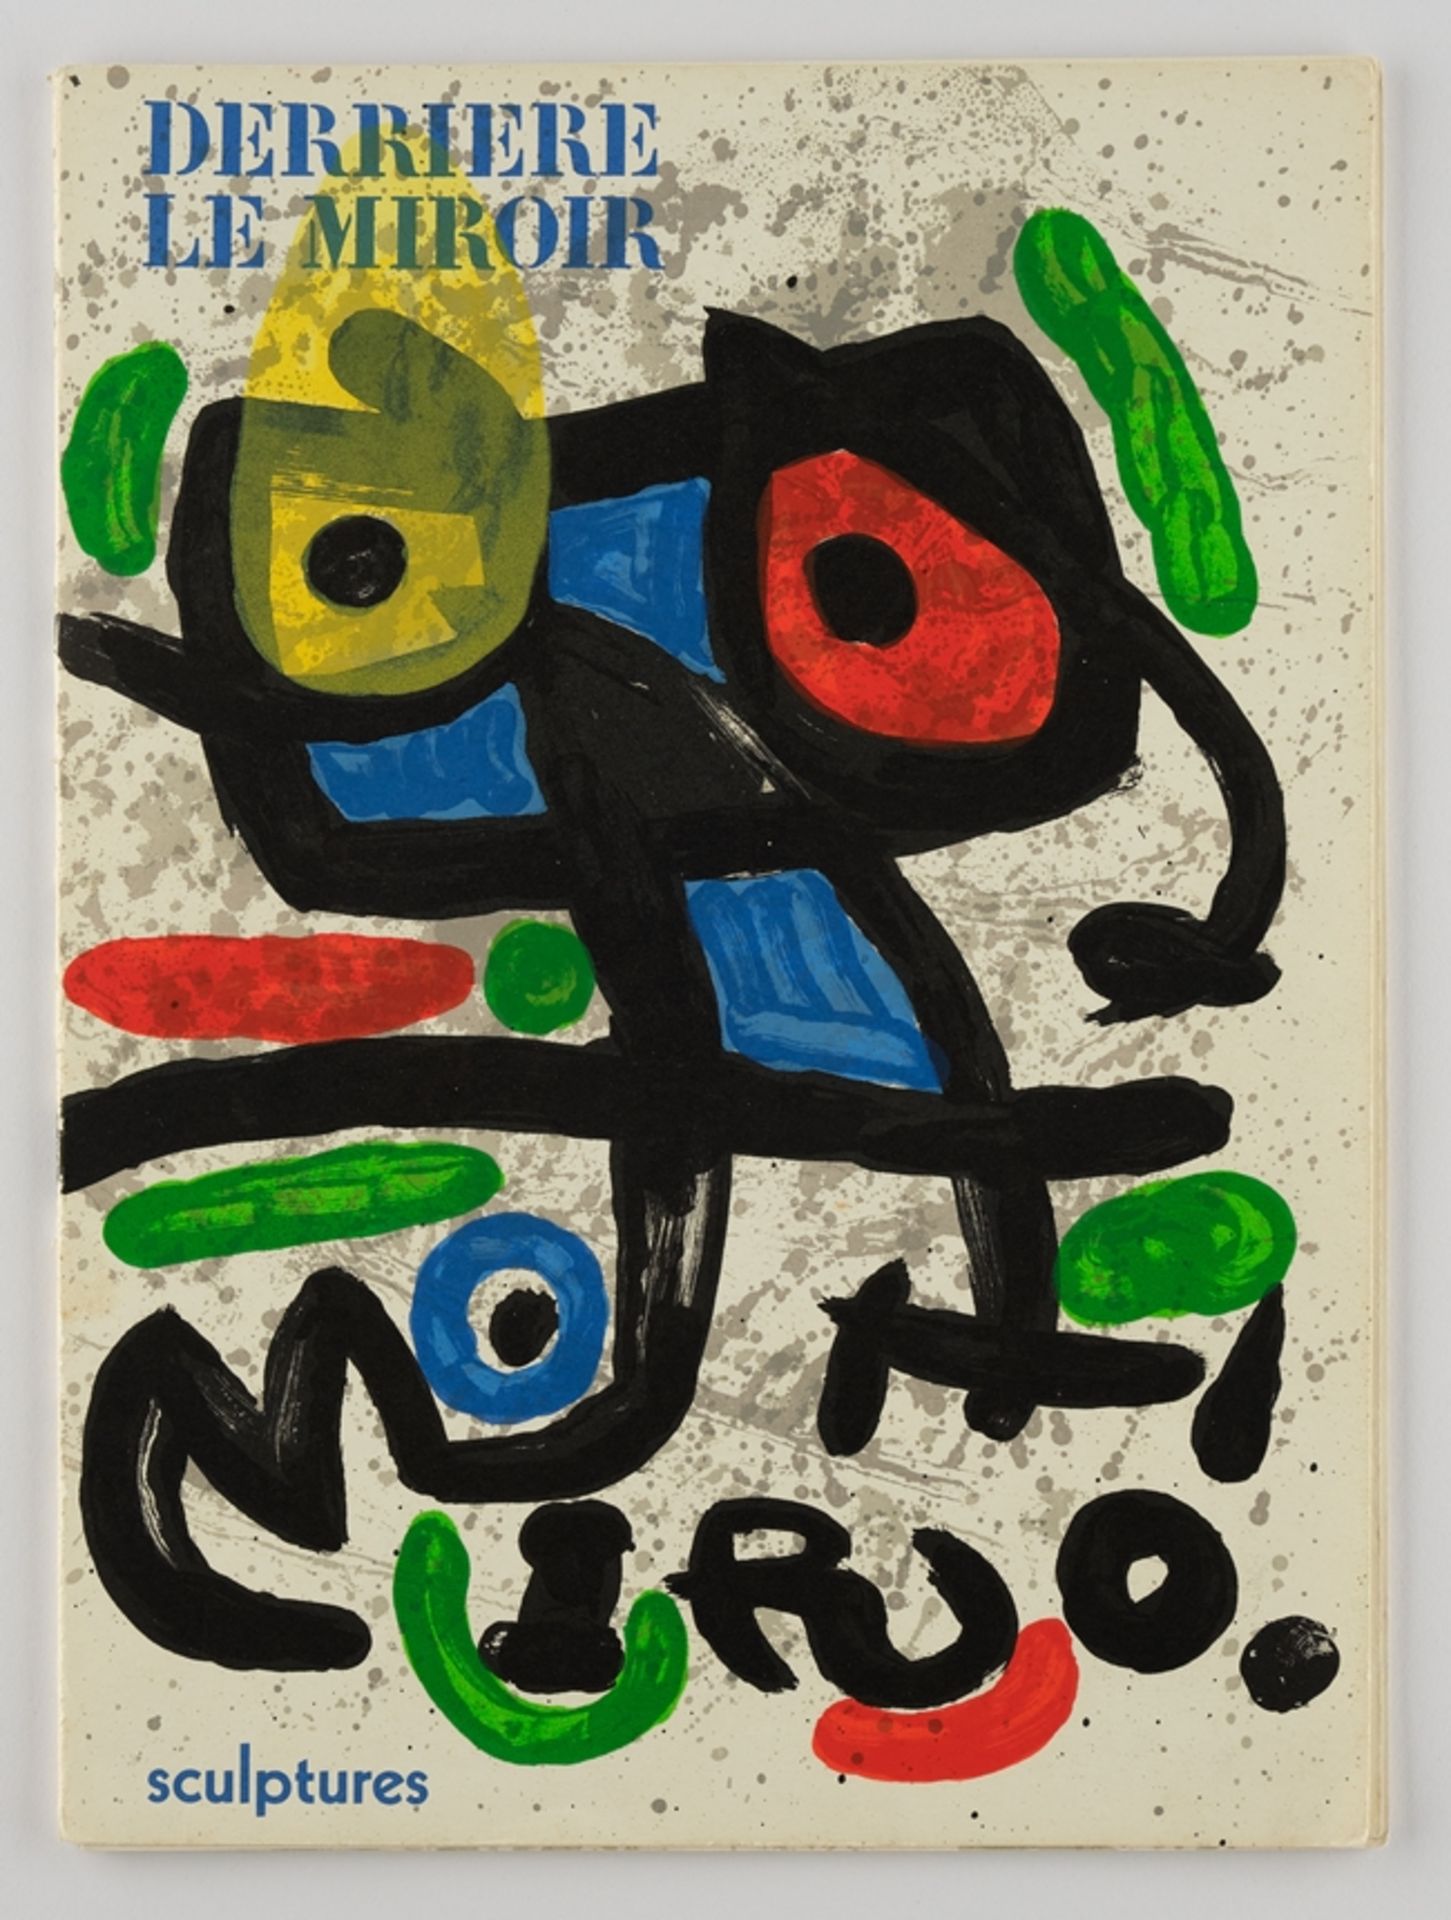 Künstler-Edition "Derriere le Miroir", gestaltet mit Werken des Künstlers Miró, Joan (Montroig 1893